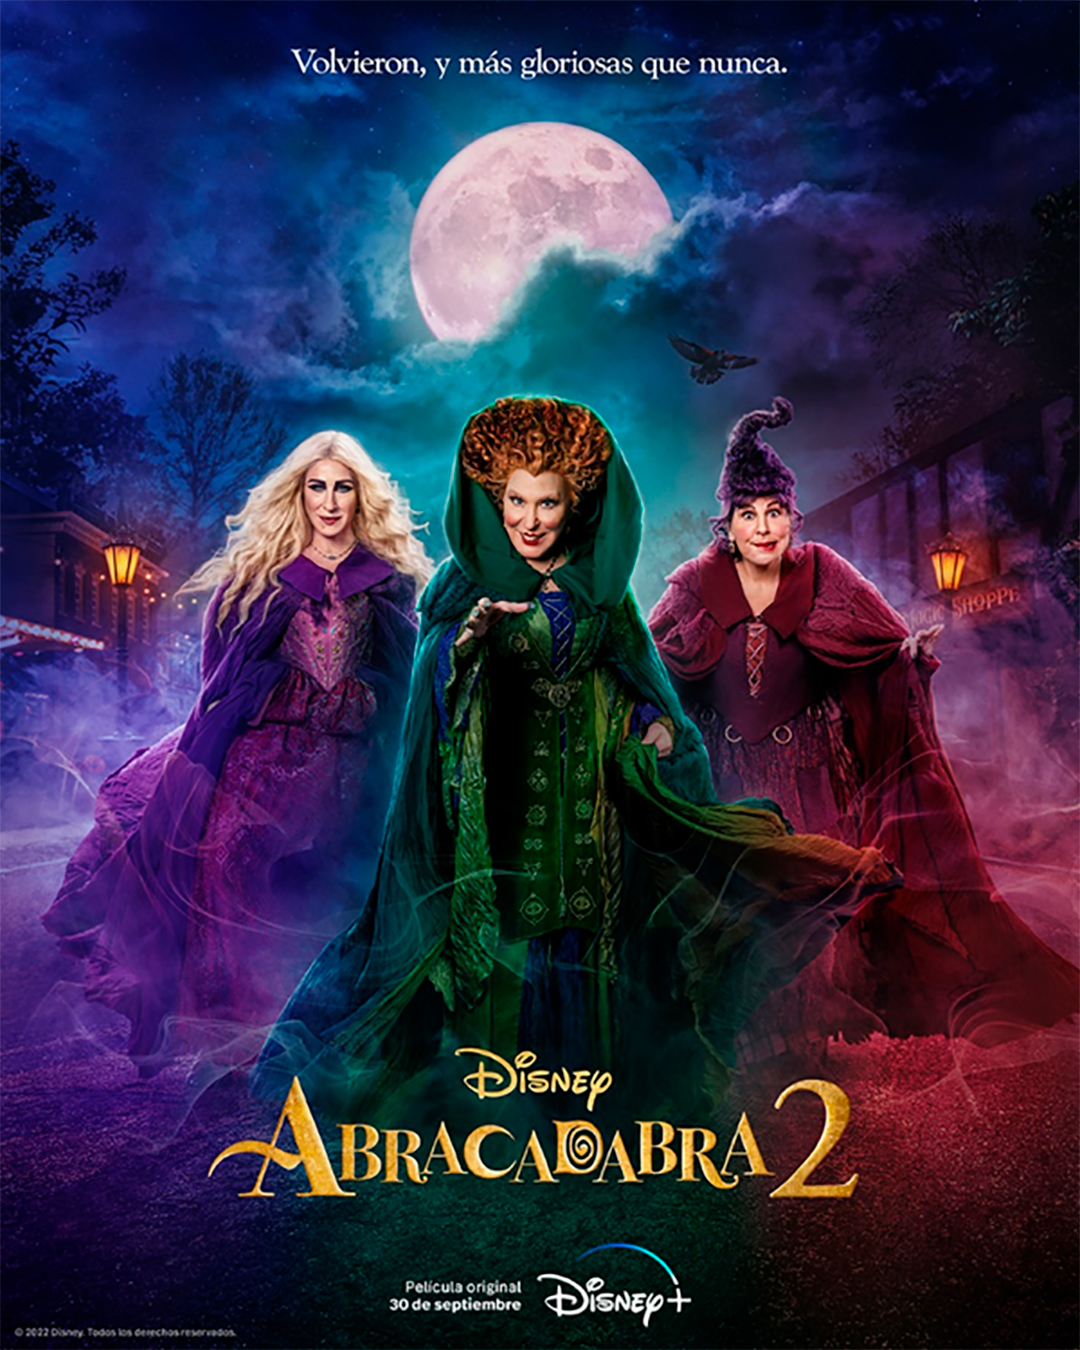 El afiche de promoción de la secuela de "Abracadabra".
(Disney Plus)